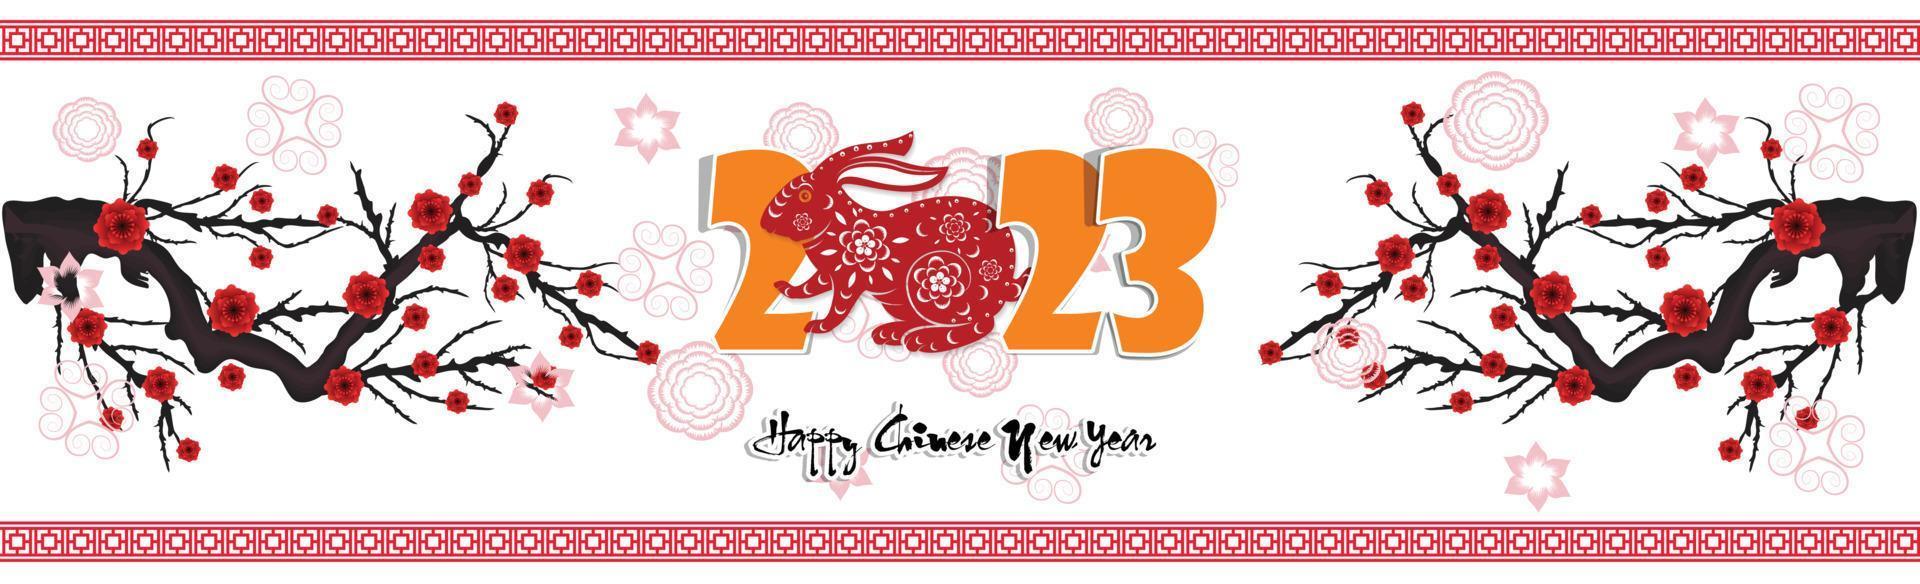 feliz año nuevo lunar 2023, año nuevo vietnamita, año del gato. vector